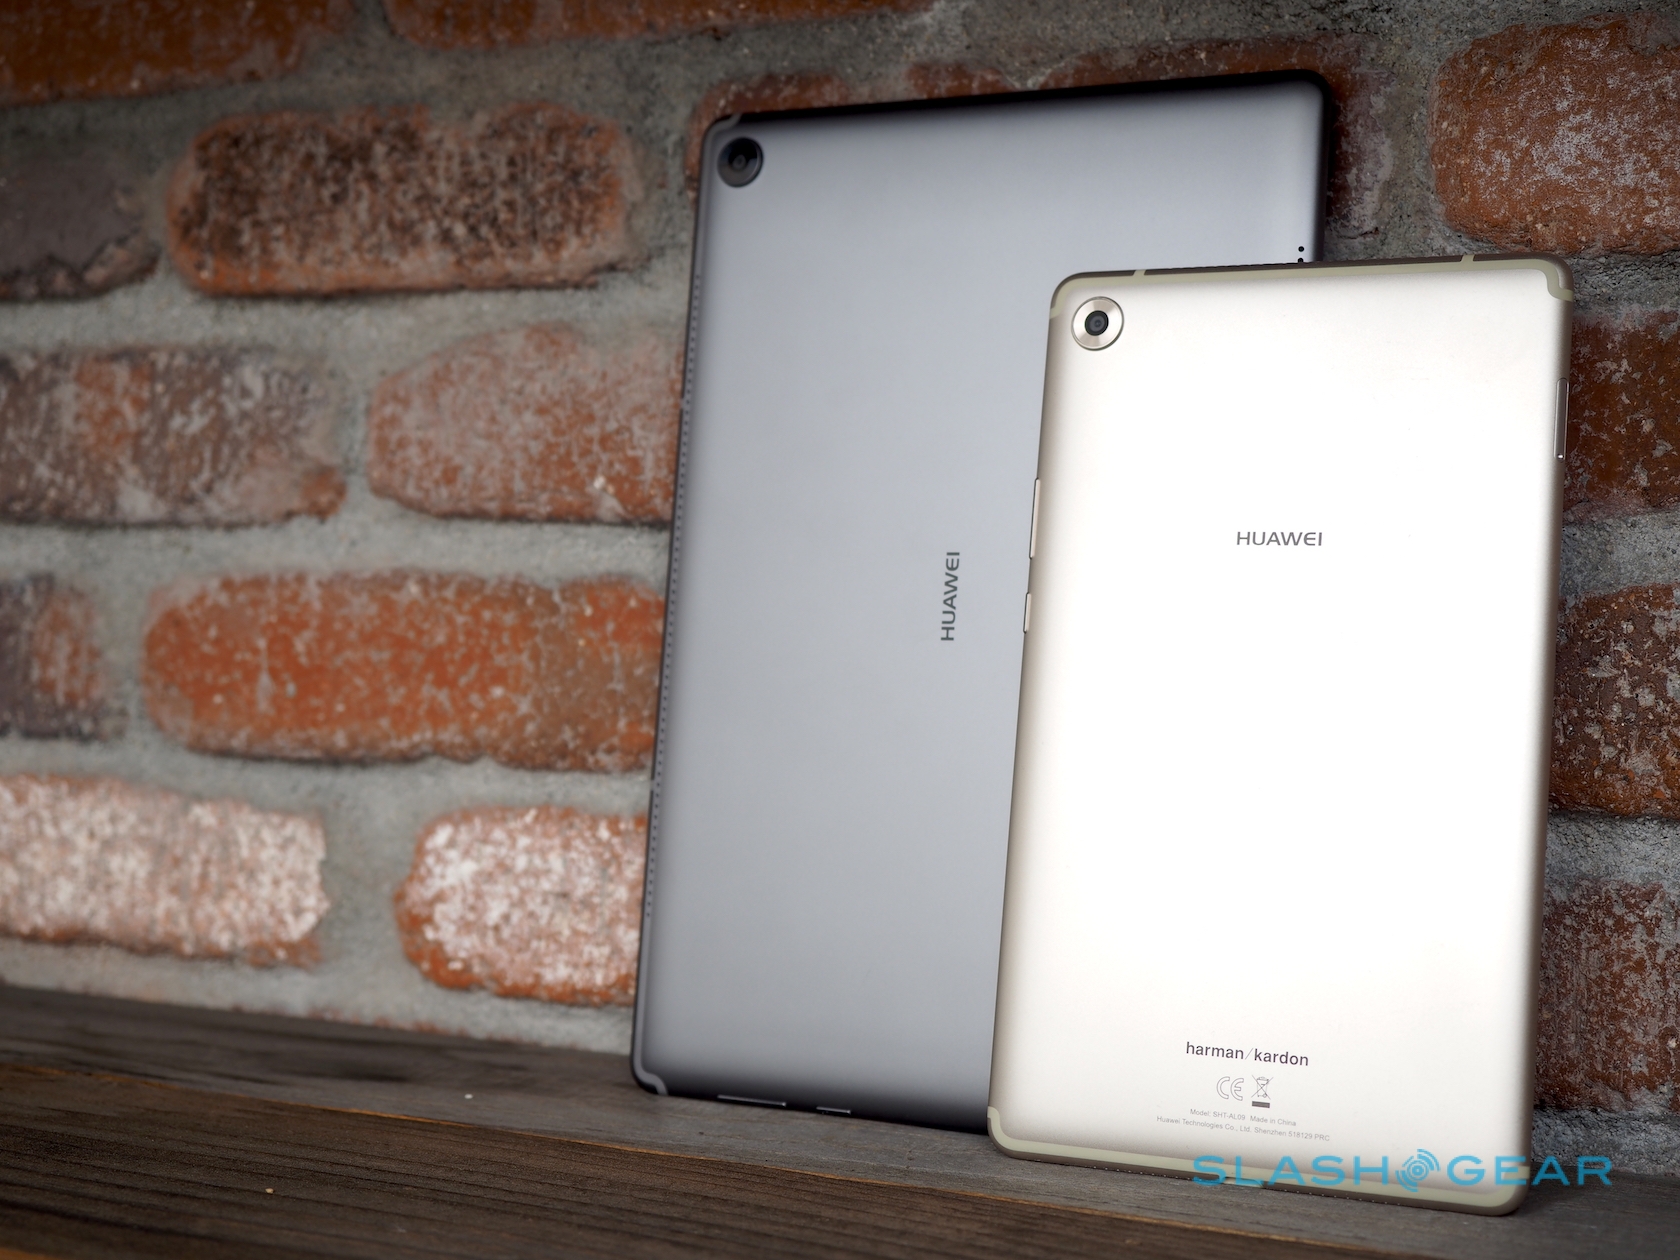 Huawei MediaPad M5 iki farklı ekran boyutuyla iPad Pro'ya meydan okuyor